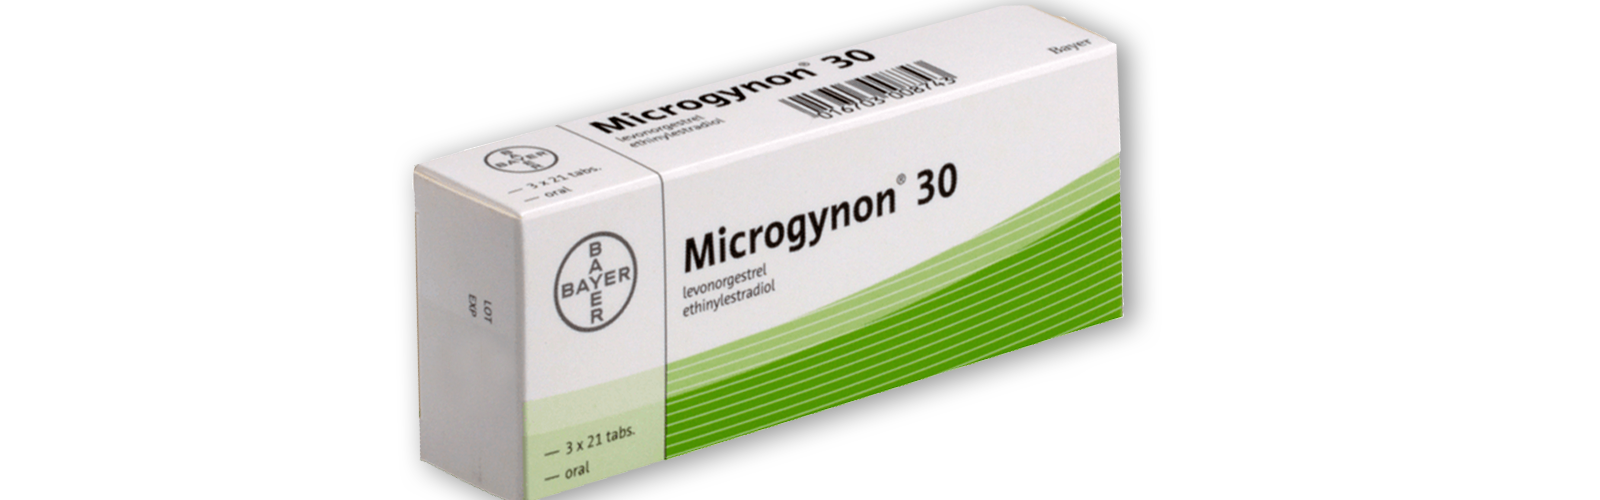 svorio netekimas mikrogynone 30